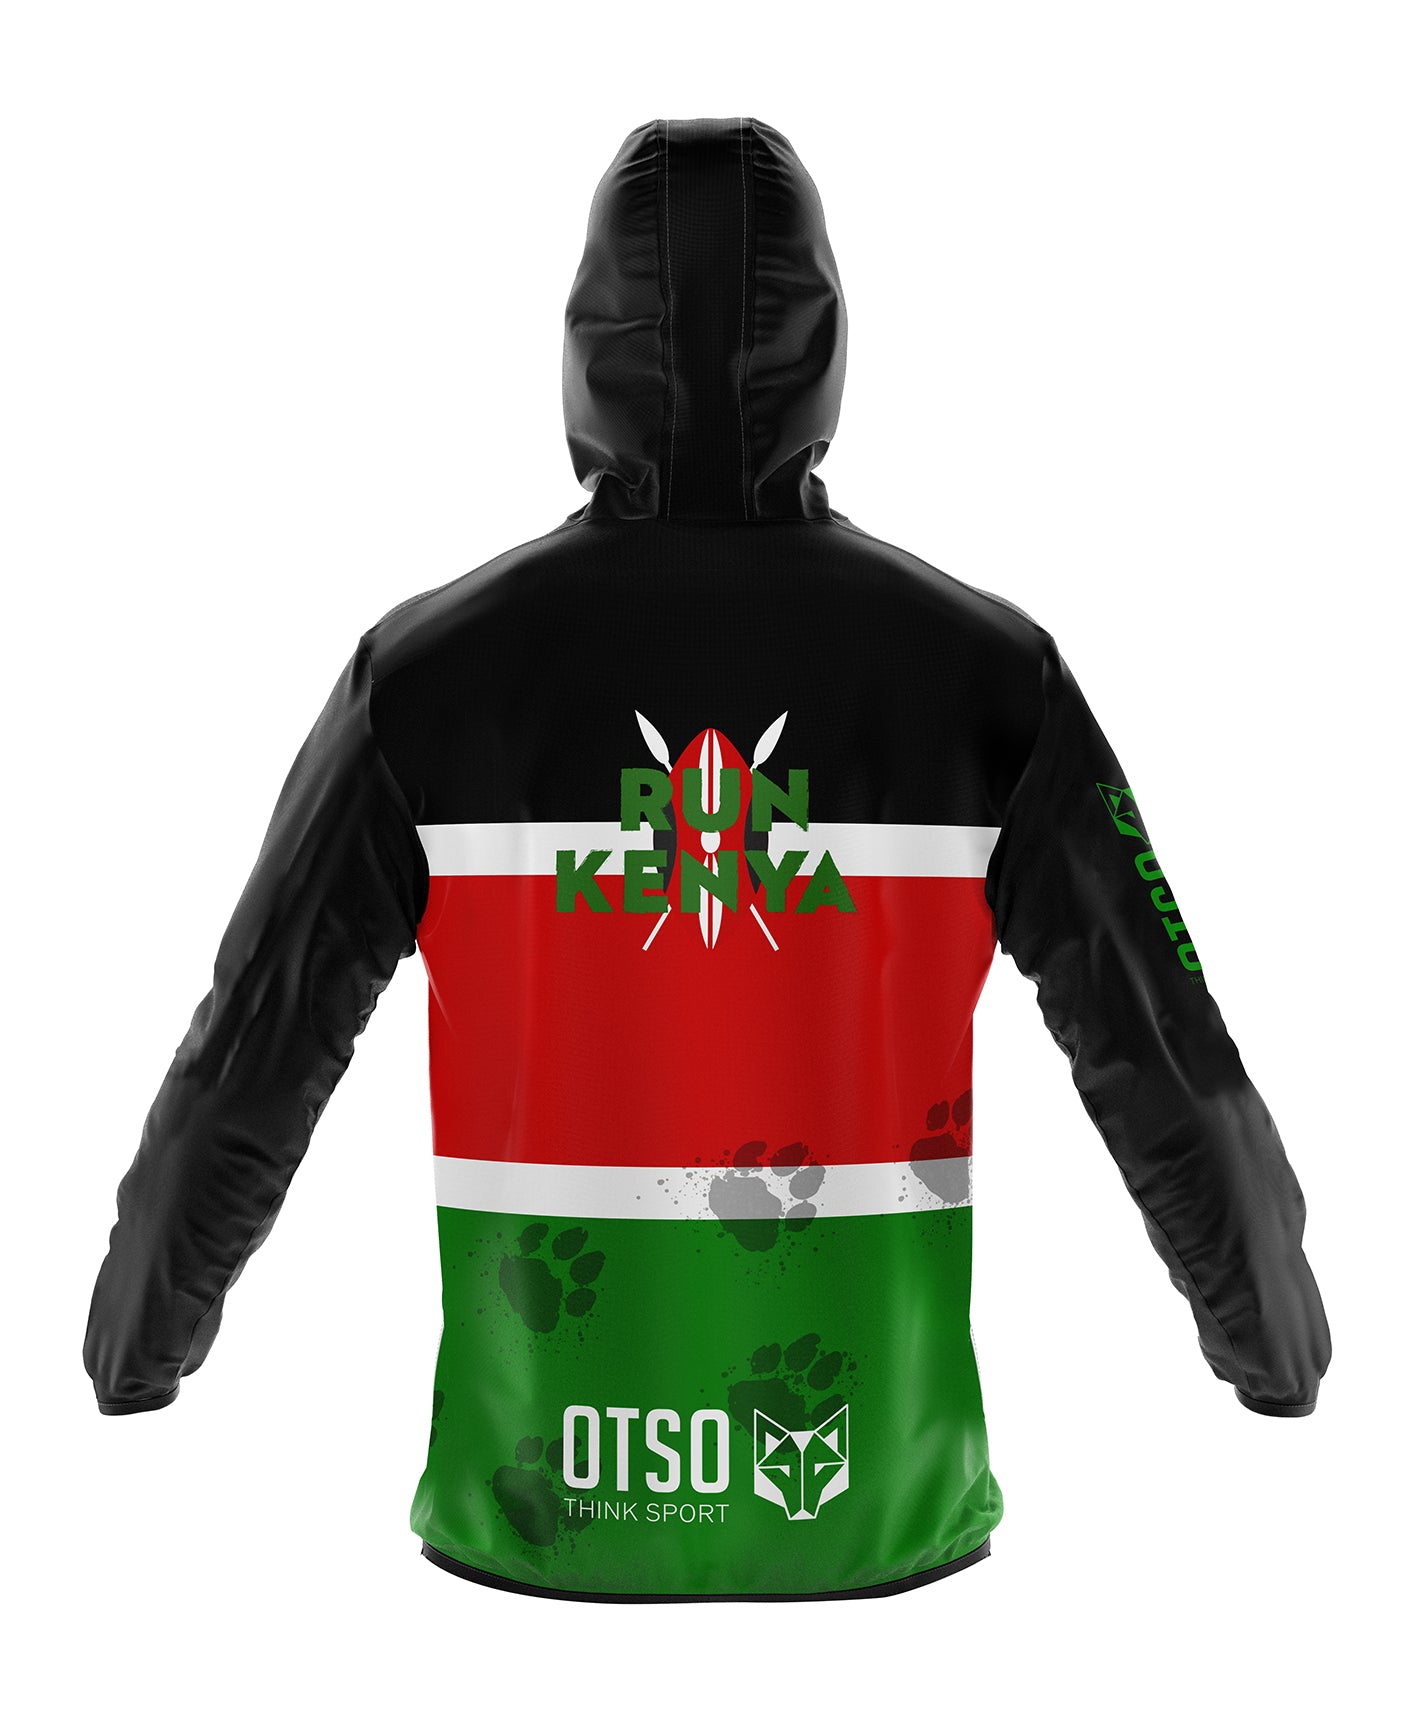 Unisex Running Jacket - Kenya